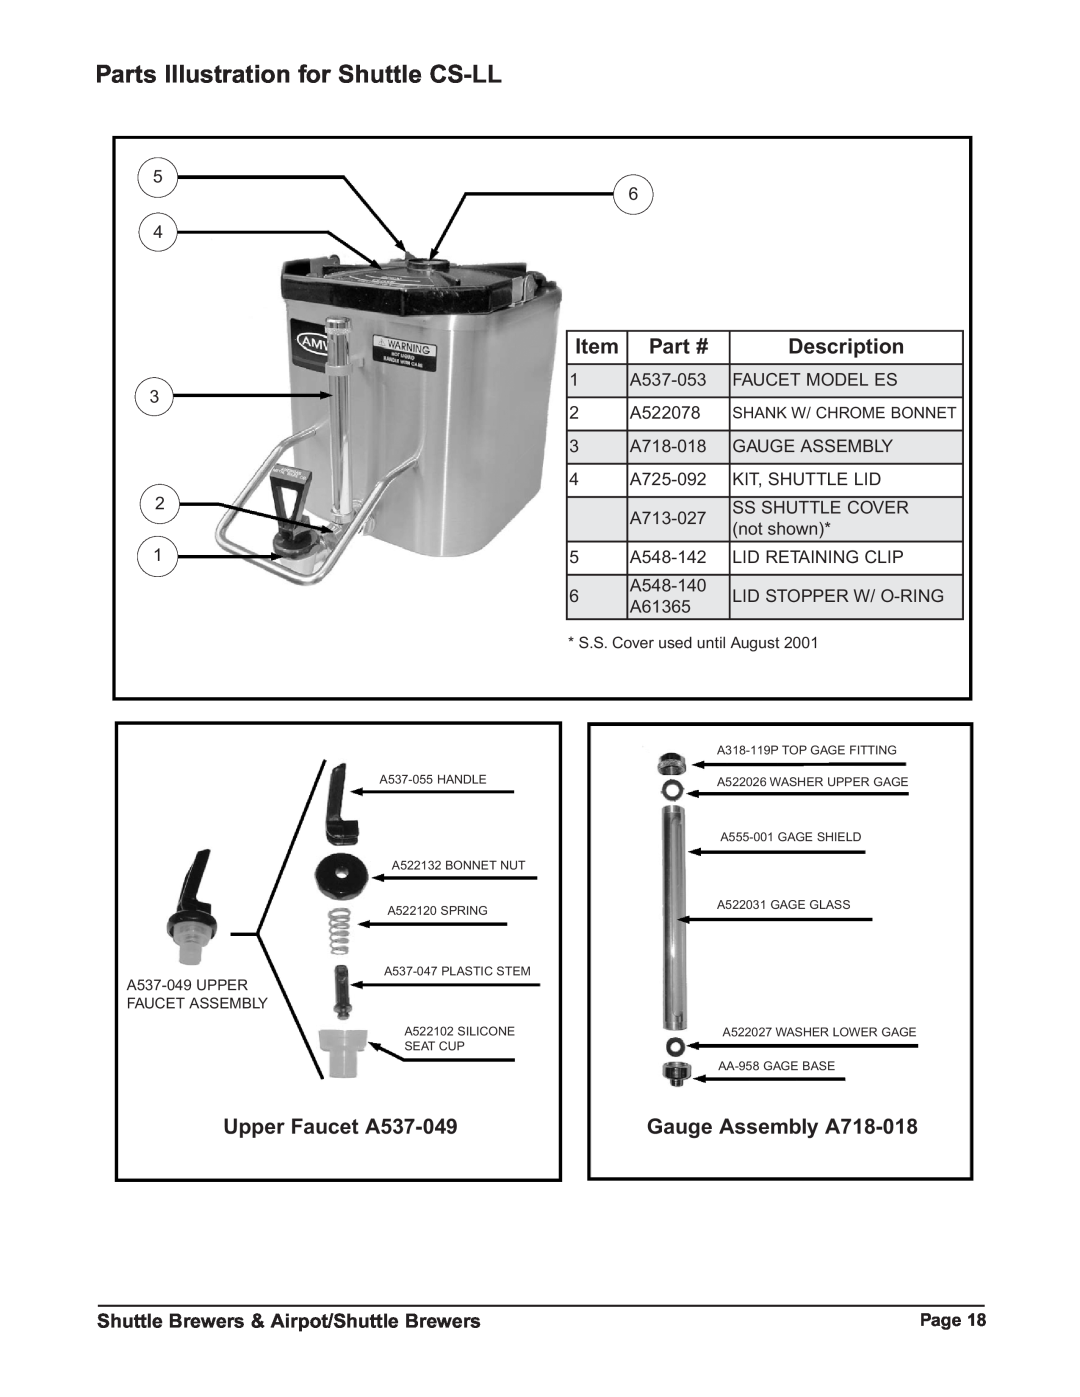 Grindmaster RAPS300E Parts Illustration for Shuttle CS-LL, Upper Faucet A537-049, Gauge Assembly A718-018, Description 